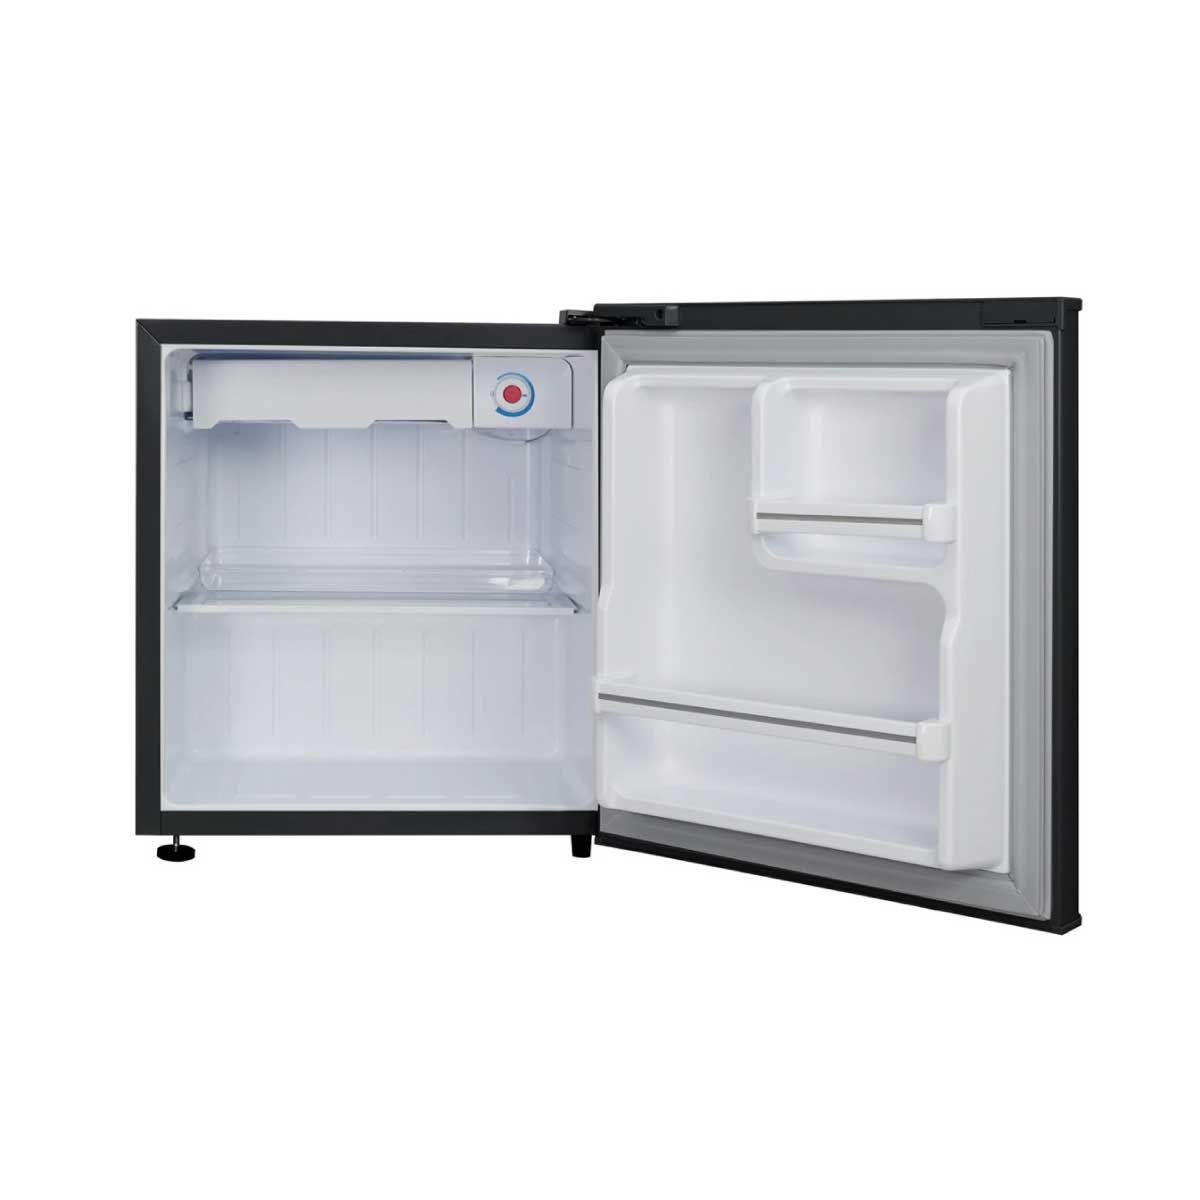 TCL ตู้เย็นมินิบาร์ 1.6Q สีดำ รุ่นRT95XFSDB